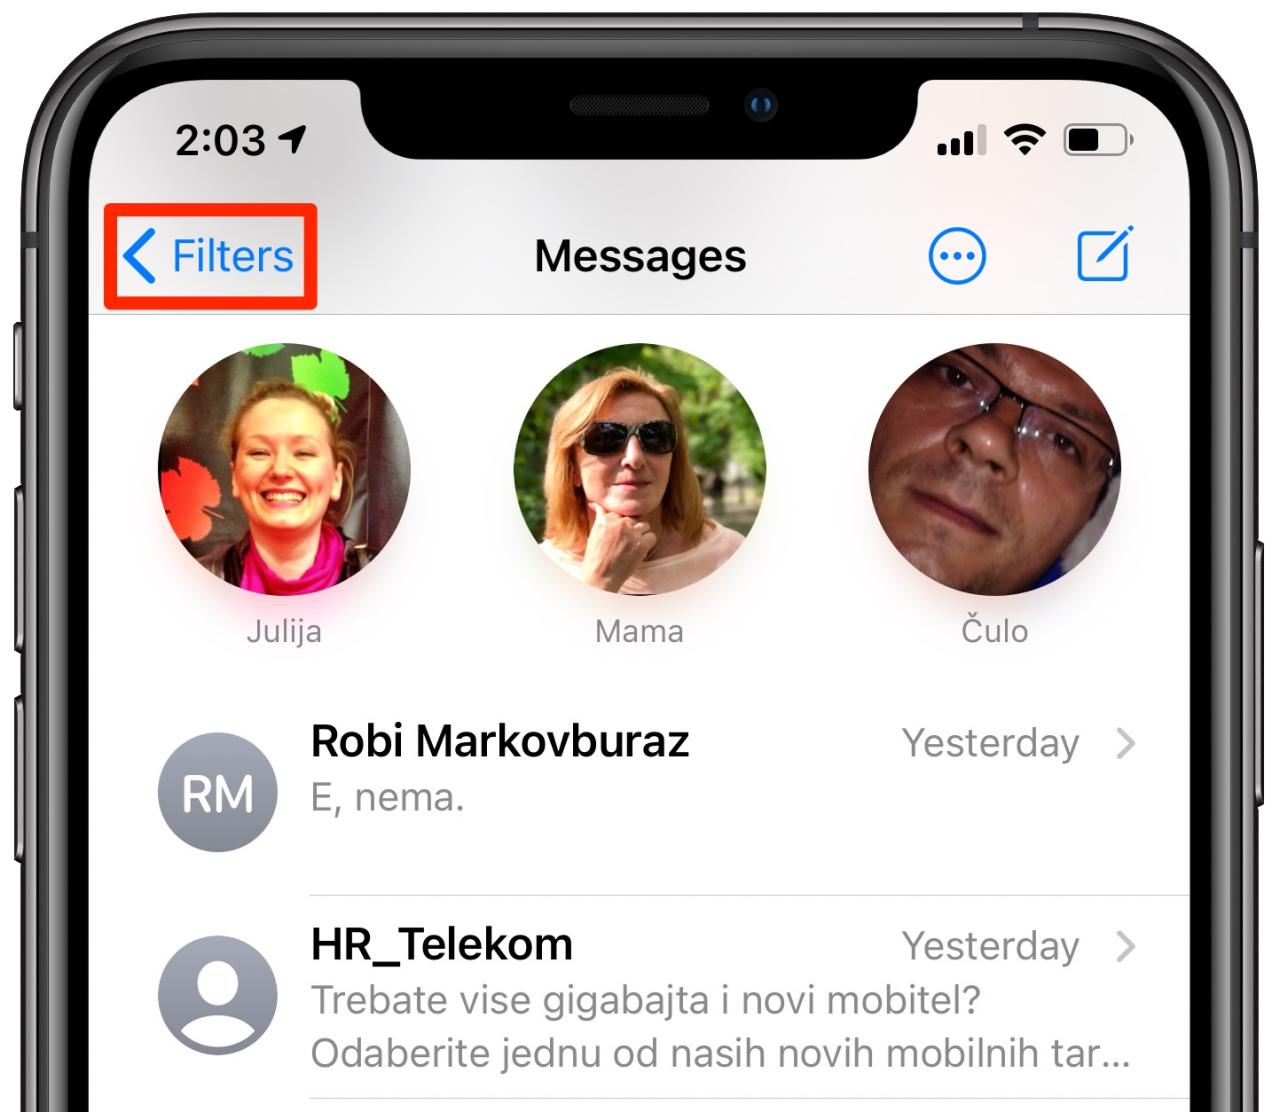 Filtrado de mensajes de iOS 17: el botón Filtros